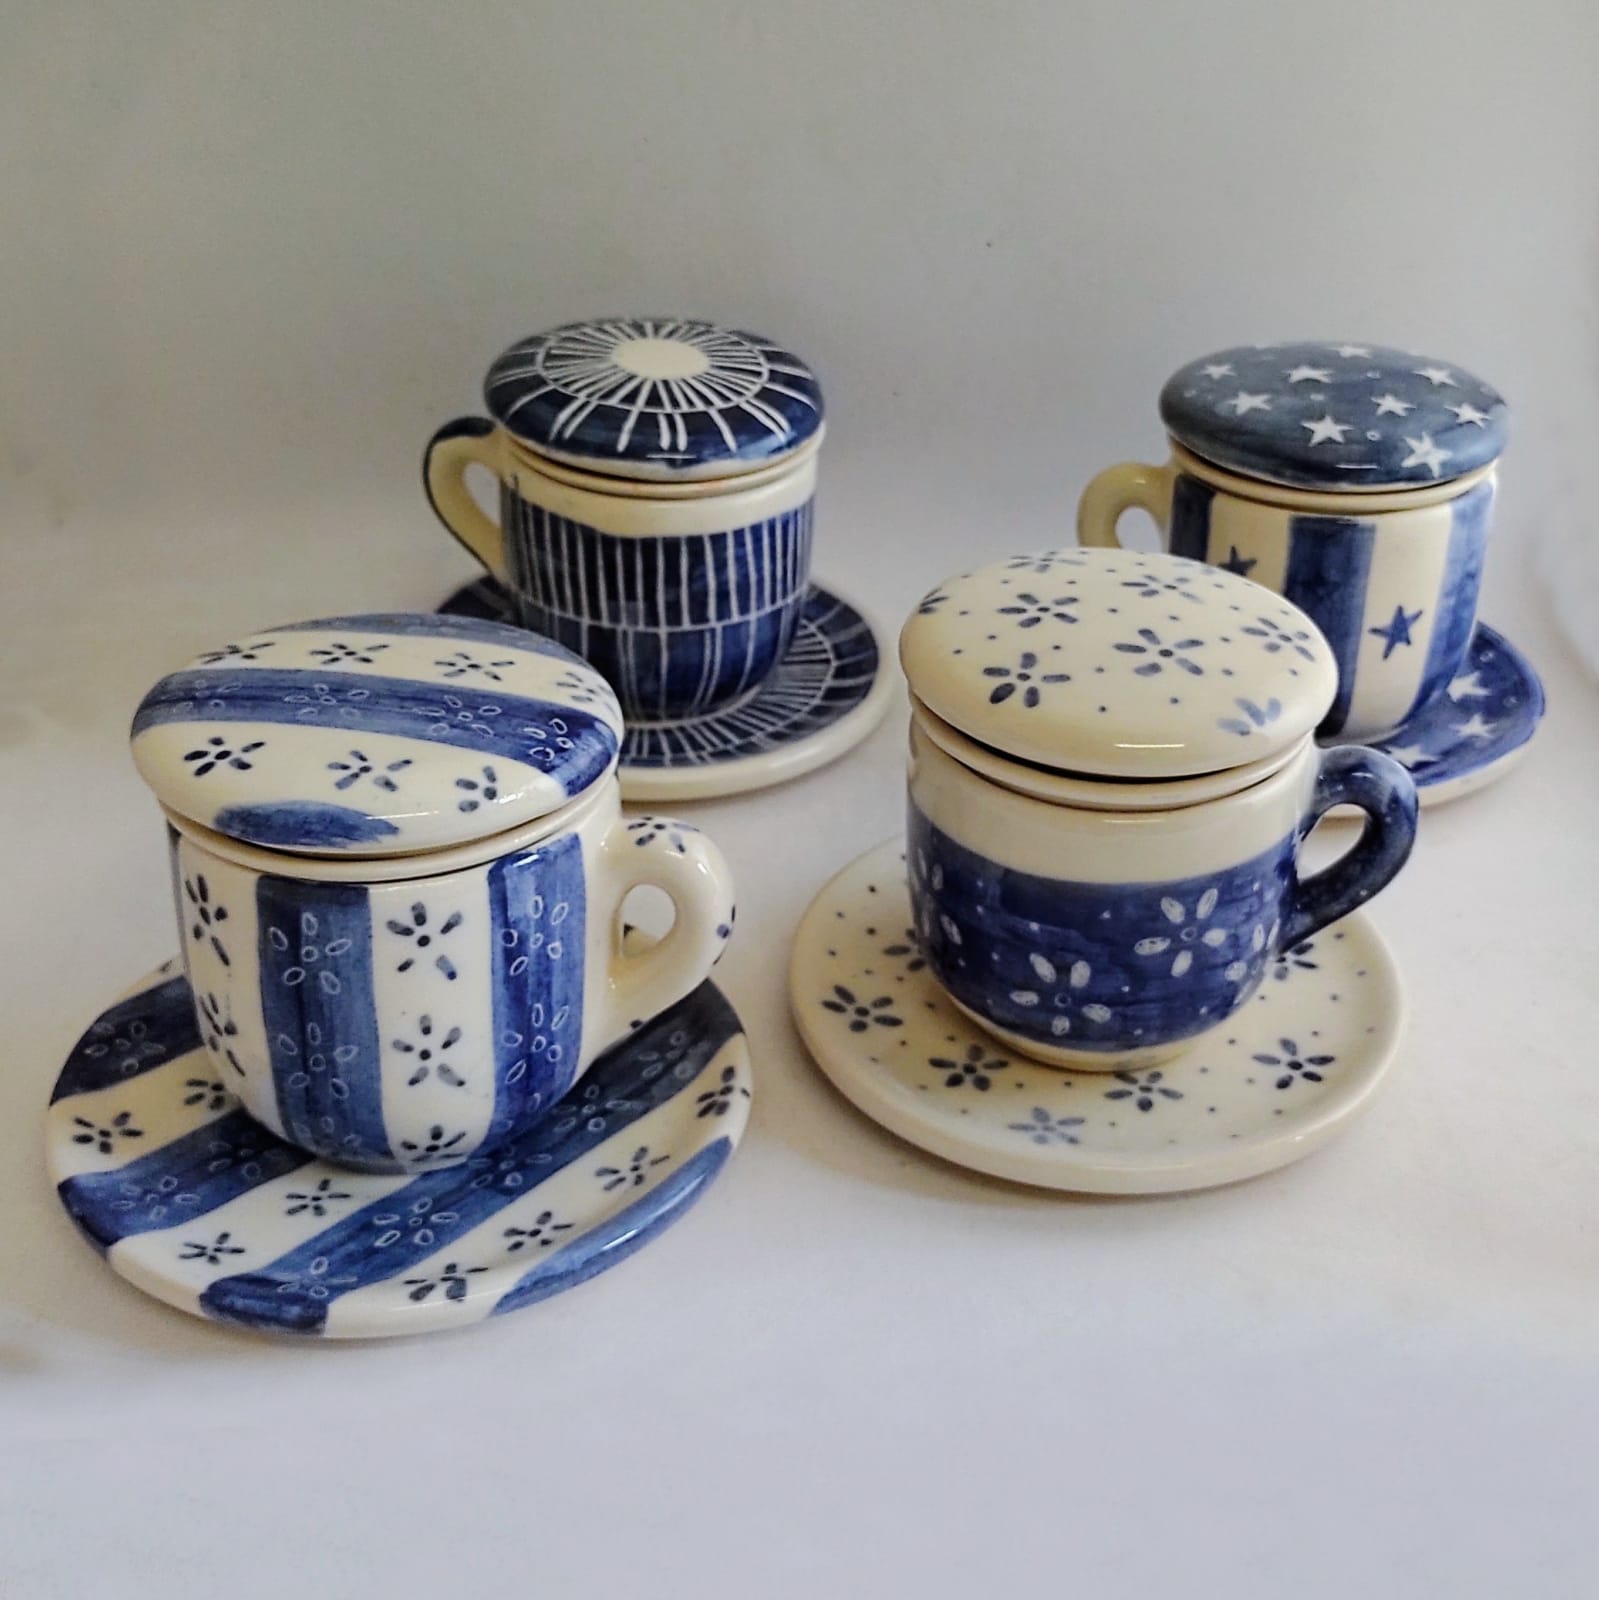 Tazas de cerámica artesanales